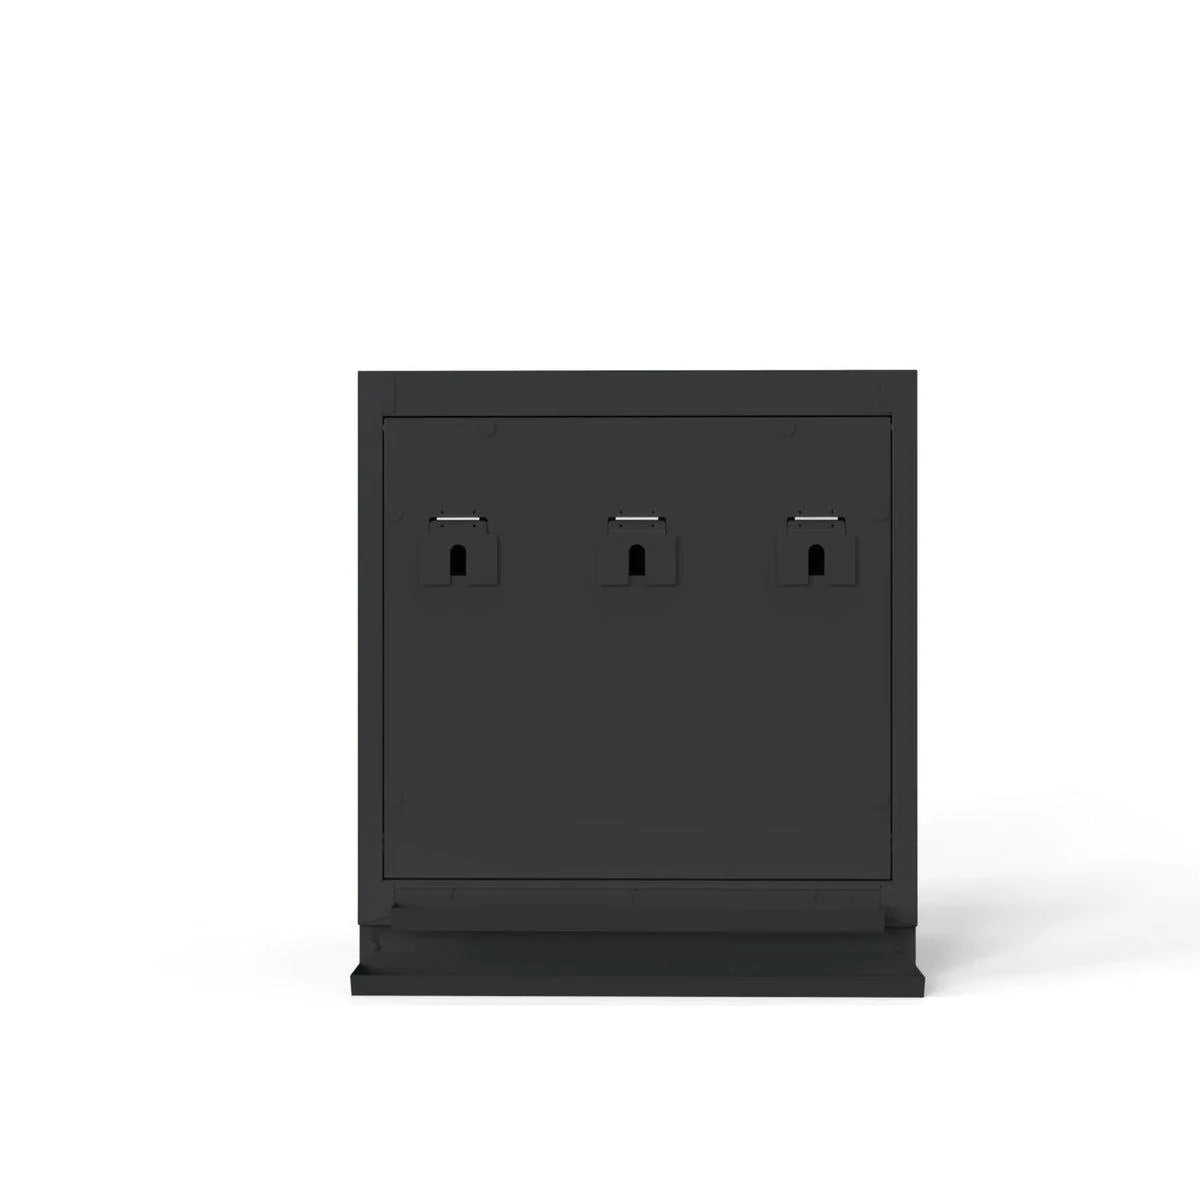 34" Oil/Air/Electrical Reel Cabinet, Dark Grey